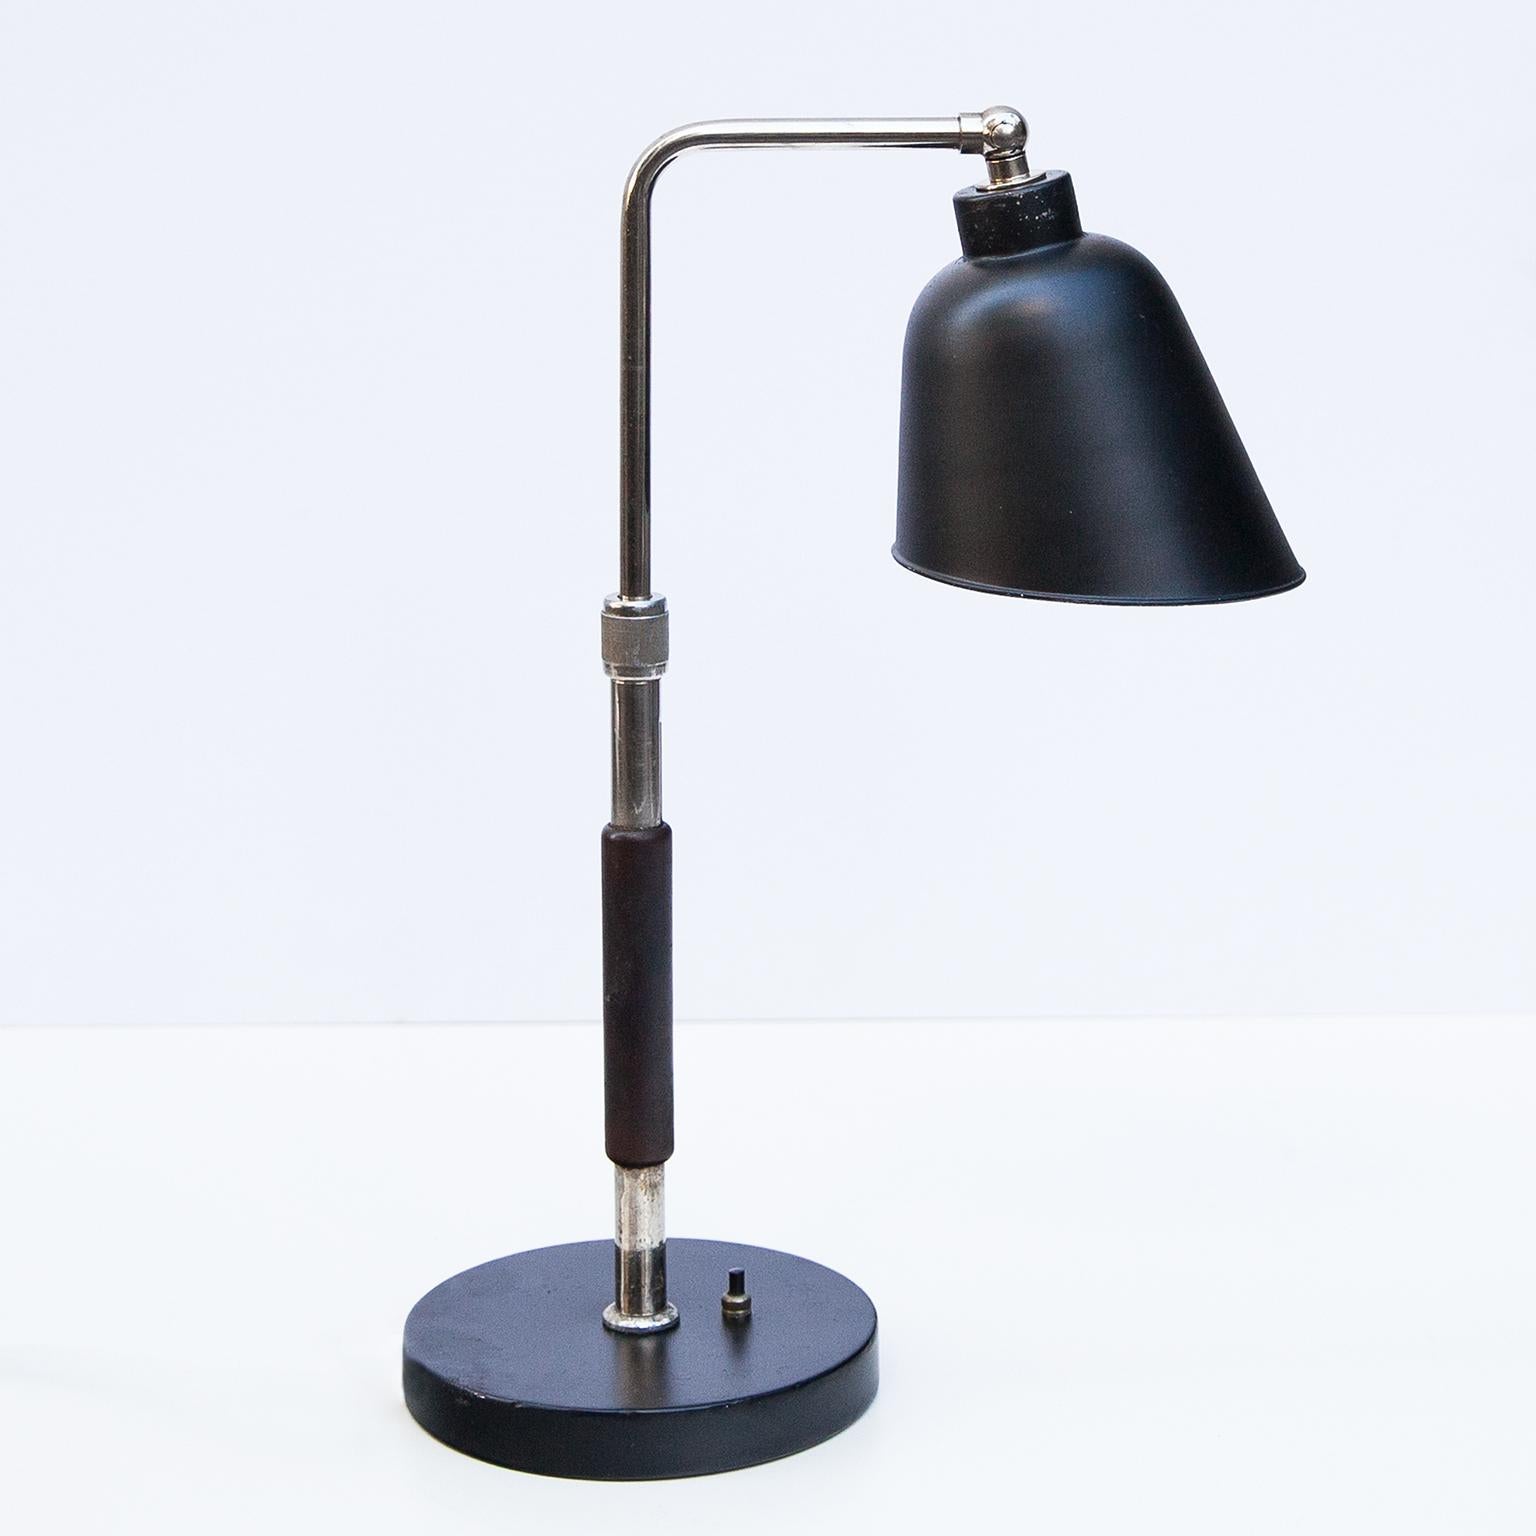 Rare lampe de table Christian Dell modèle no. 6607, fabriquée par Gebrüder Kaiser & Co. à Neheim-Hüsten, Allemagne, années 1930. Exécuté en bois peint en noir, en métal laqué, en métal chromé, l'abat-jour peint en noir.
Littérature : Der Arbeit zu